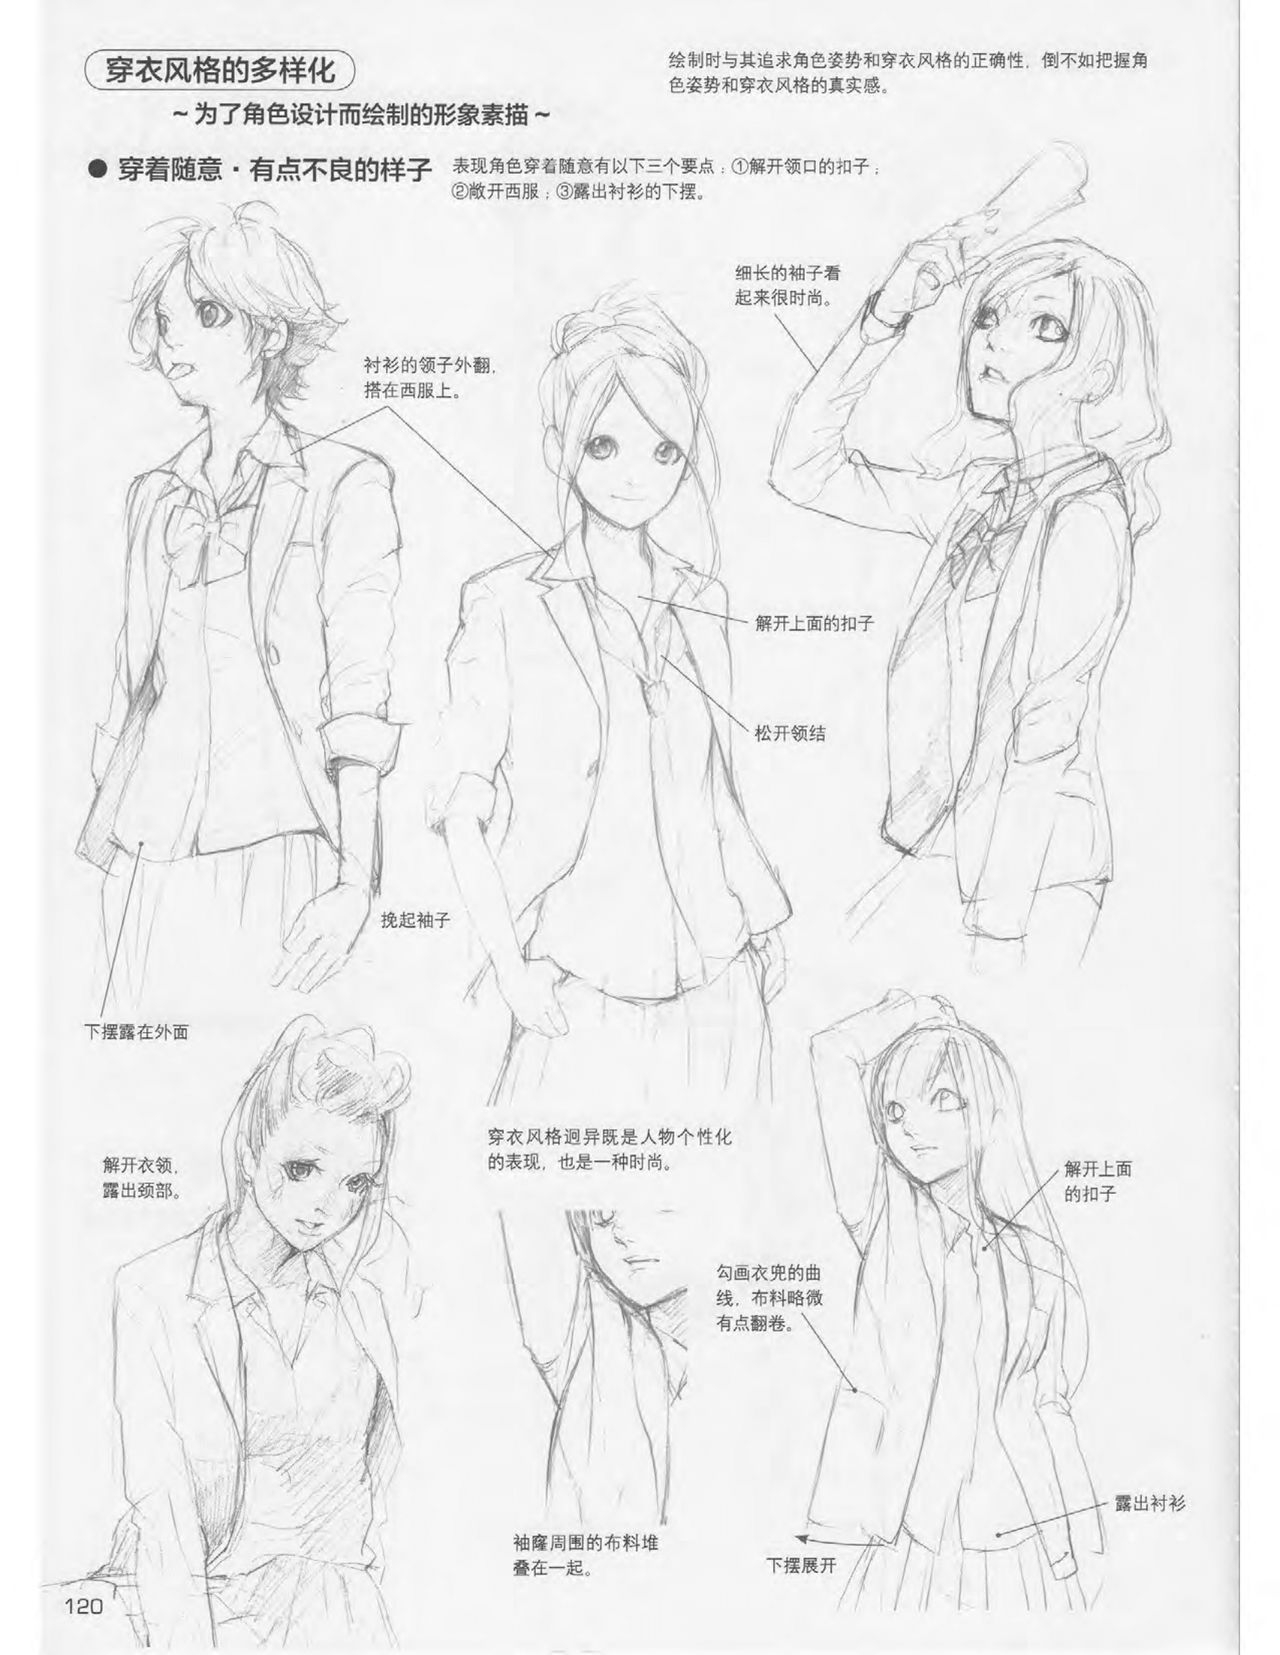 Japanese Manga Master Lecture 3: Lin Akira and Kakumaru Maru Talk About Glamorous Character Modeling 120